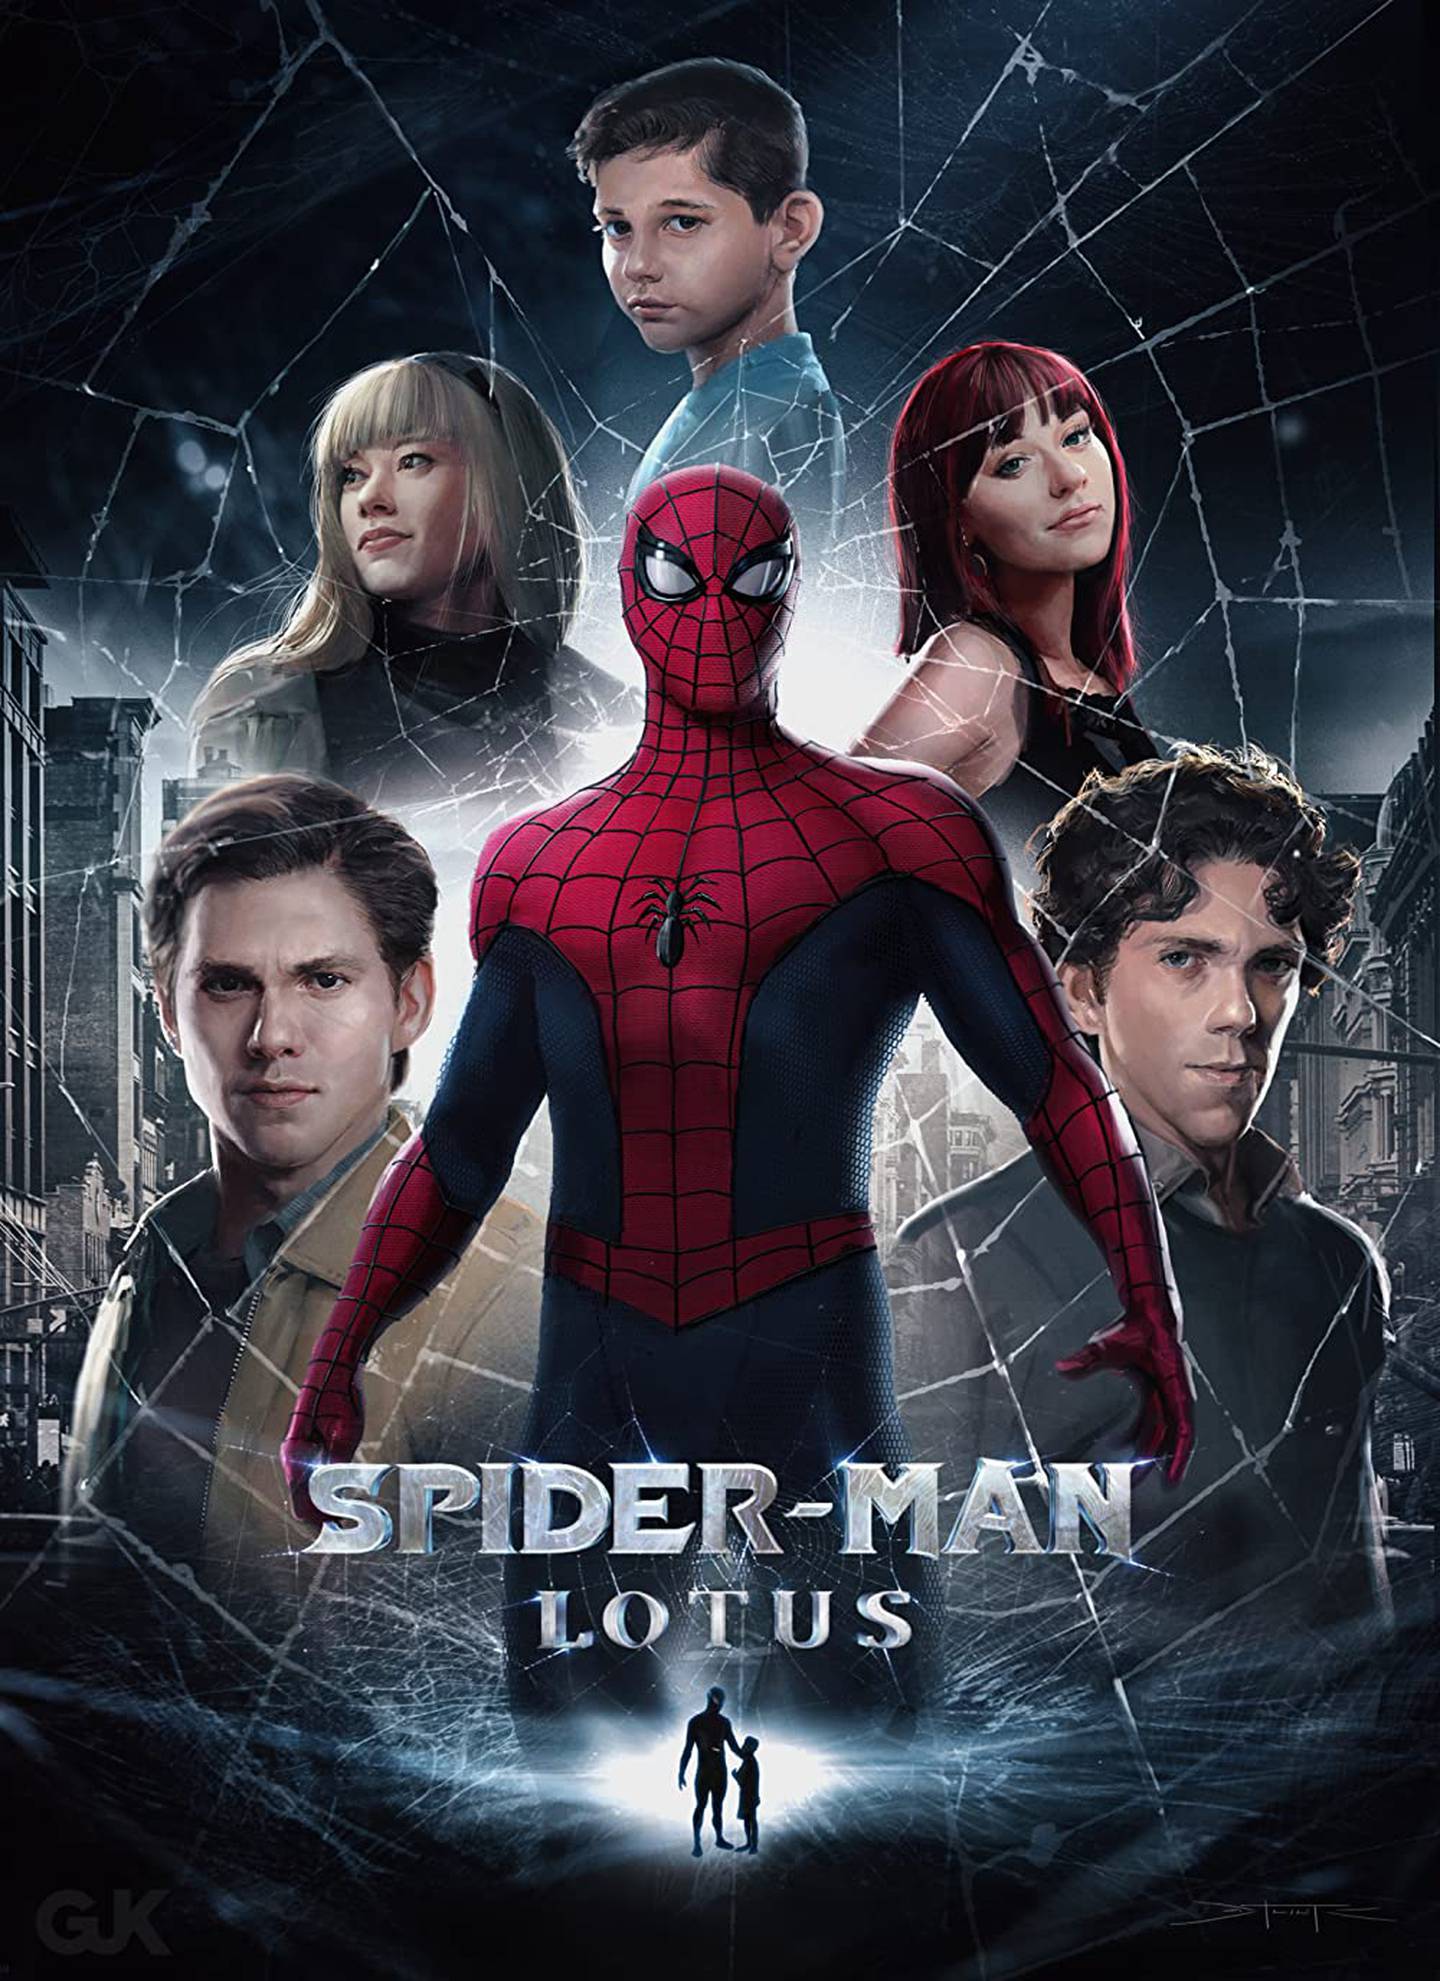 Wayne Warden interpreta a Peter Parker en la película de fans Spider-Man: Lotus, empañada por los viejos mensajes del actor sobre el racismo y la homofobia.